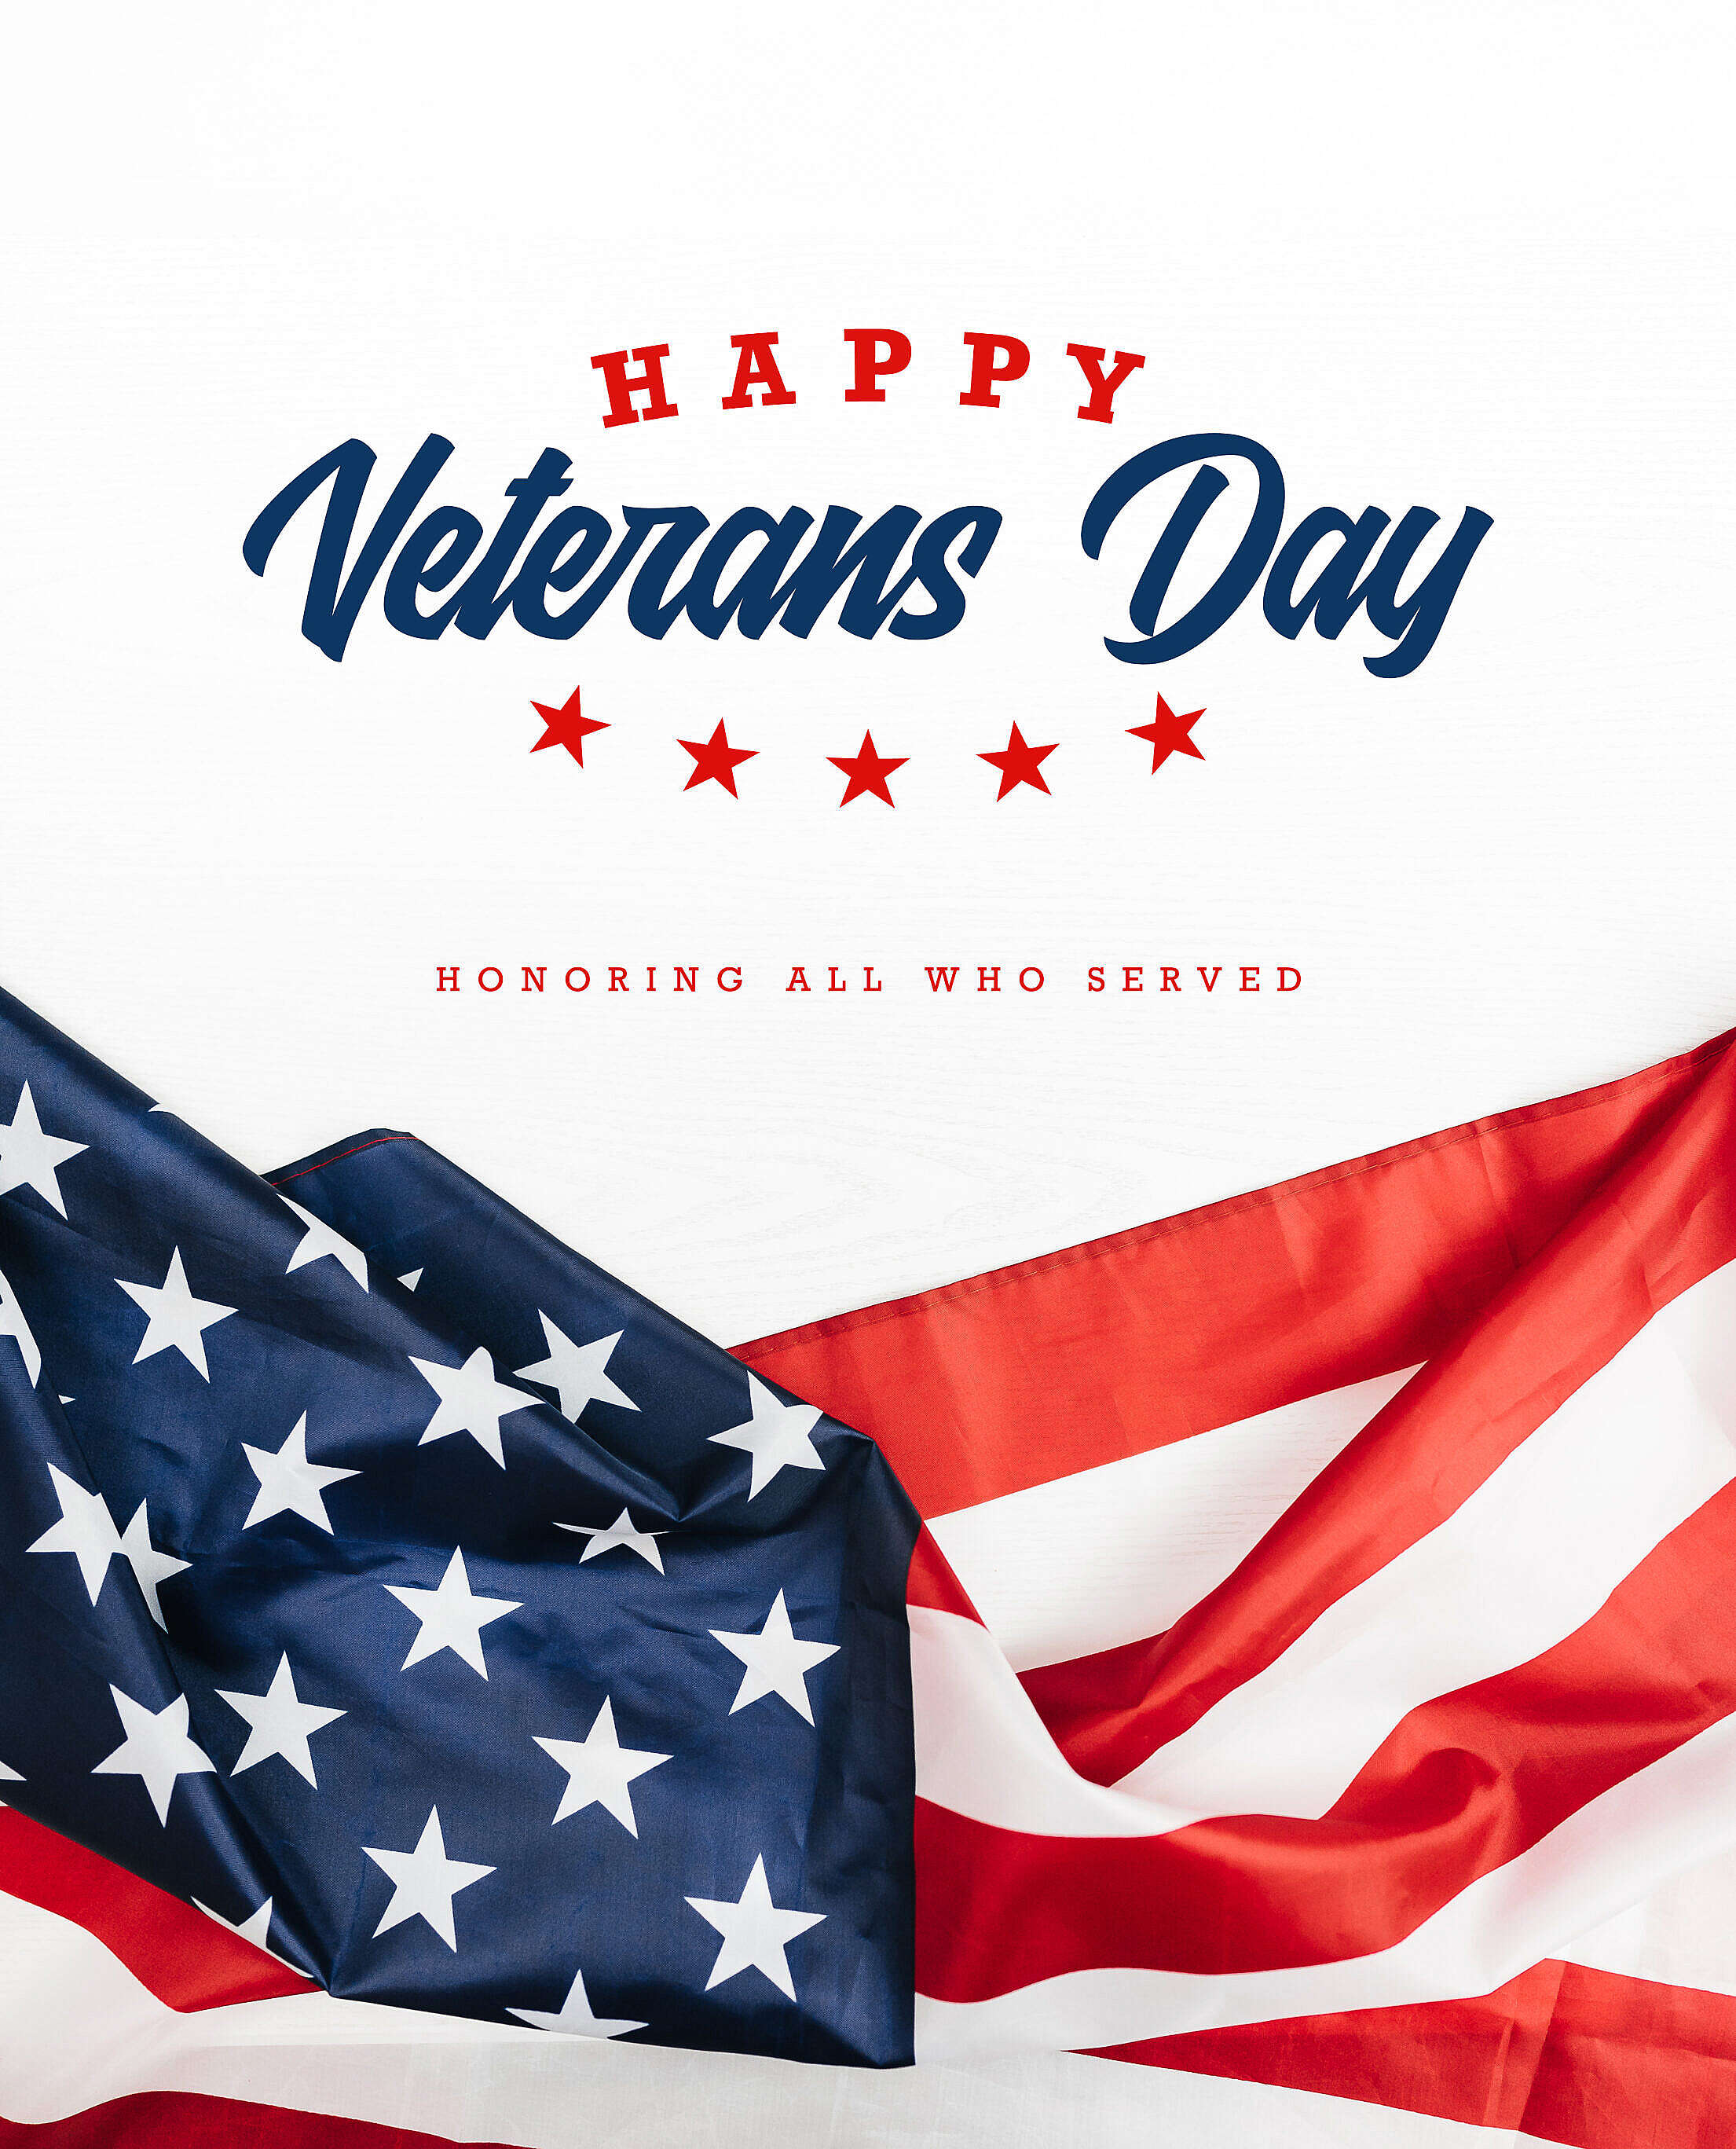 Happy Veterans Day November 11 Free Stock Photo